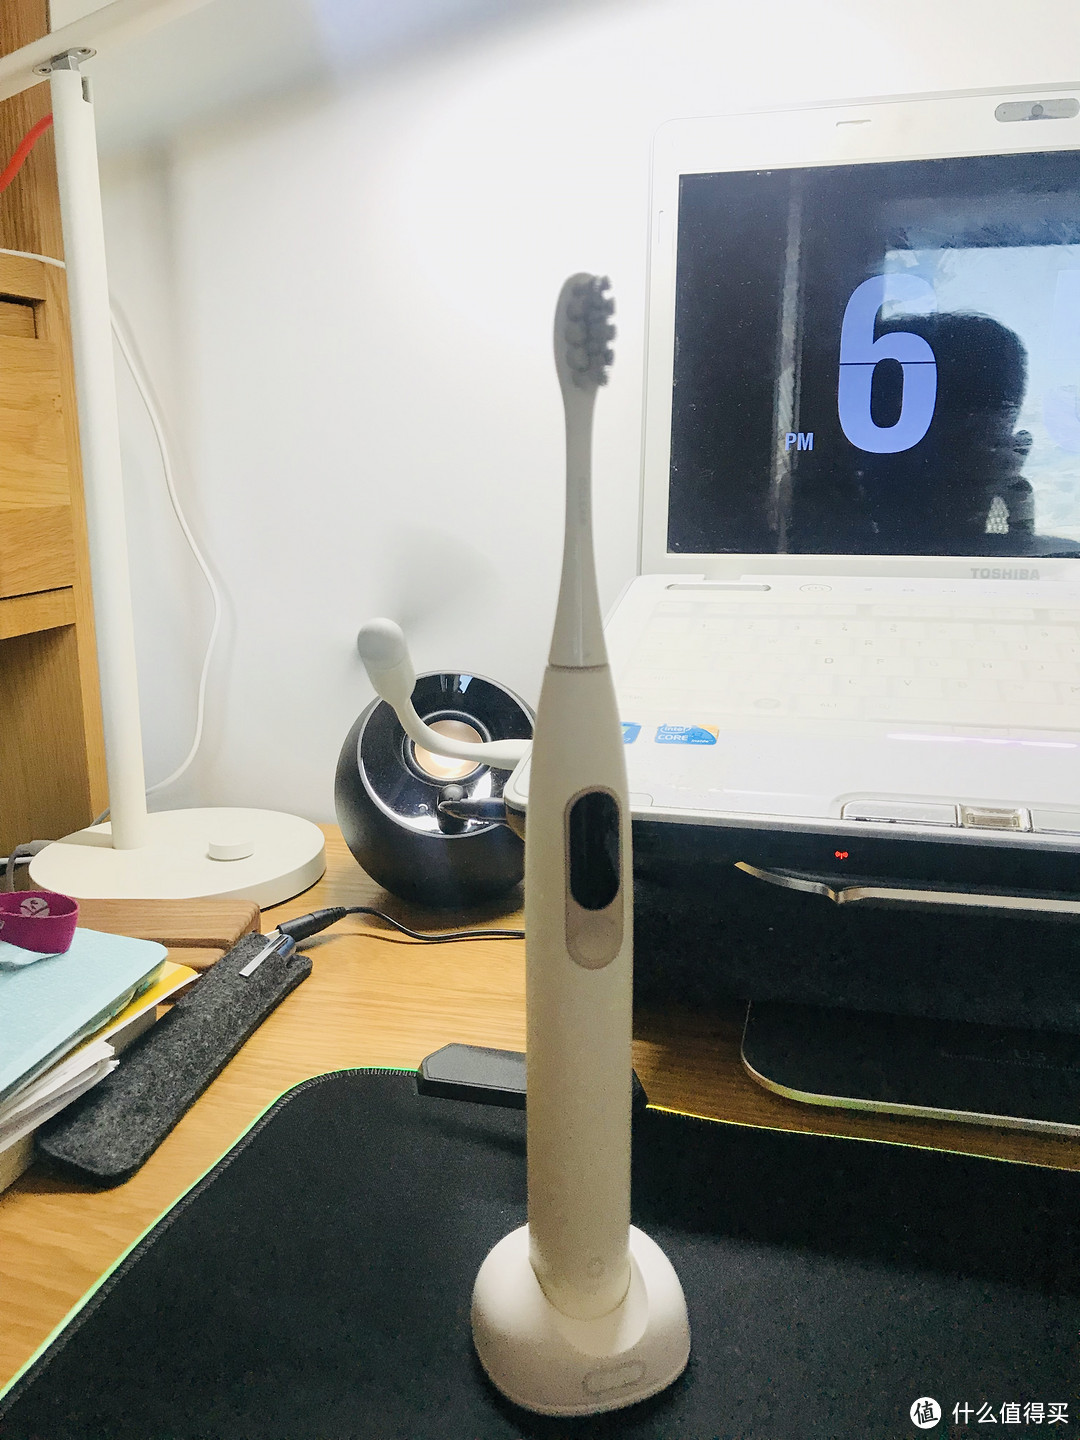 私人订制的牙齿管家—— 欧可林Oclean X 触屏智能电动牙刷